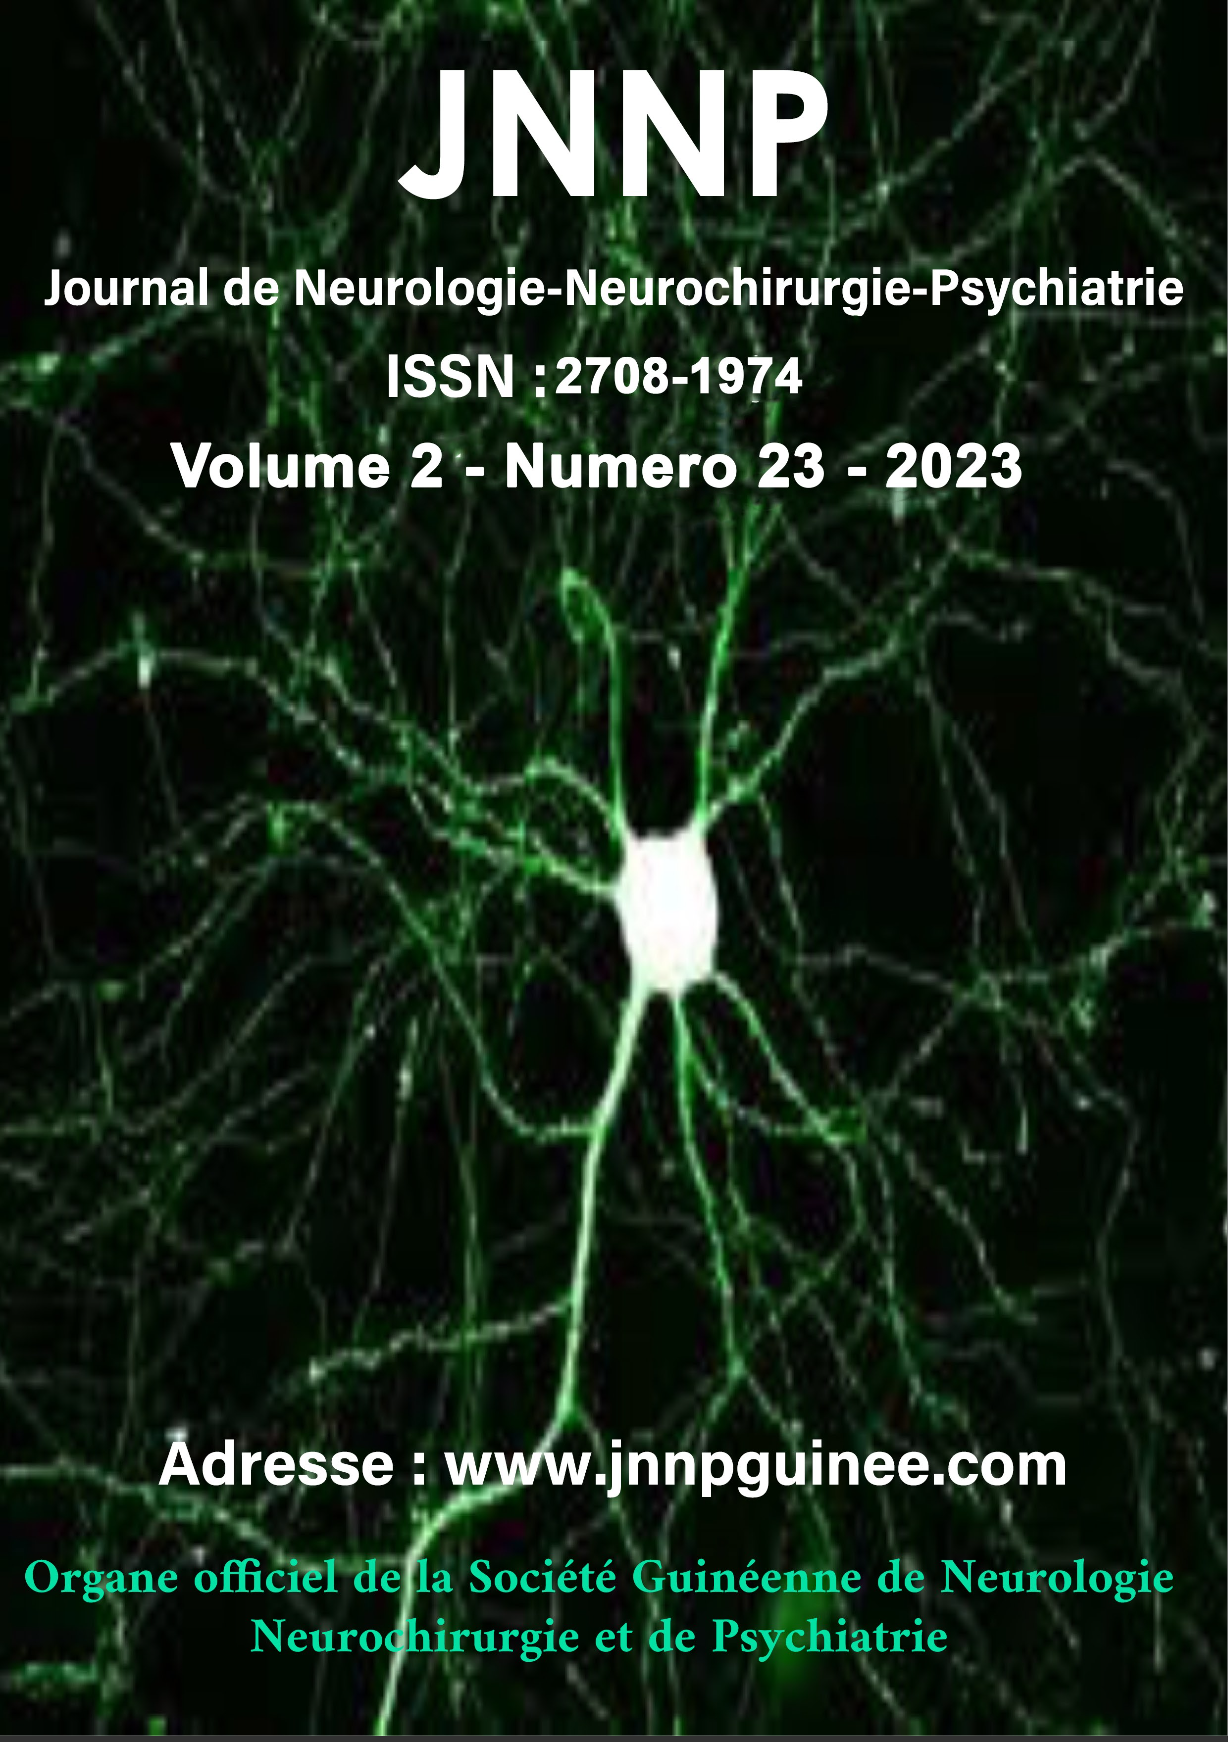 Journal de Neurologie Neurochirurgie et Psychiatrie de Guinée. Volume 02 Numéro 23 Année 2023